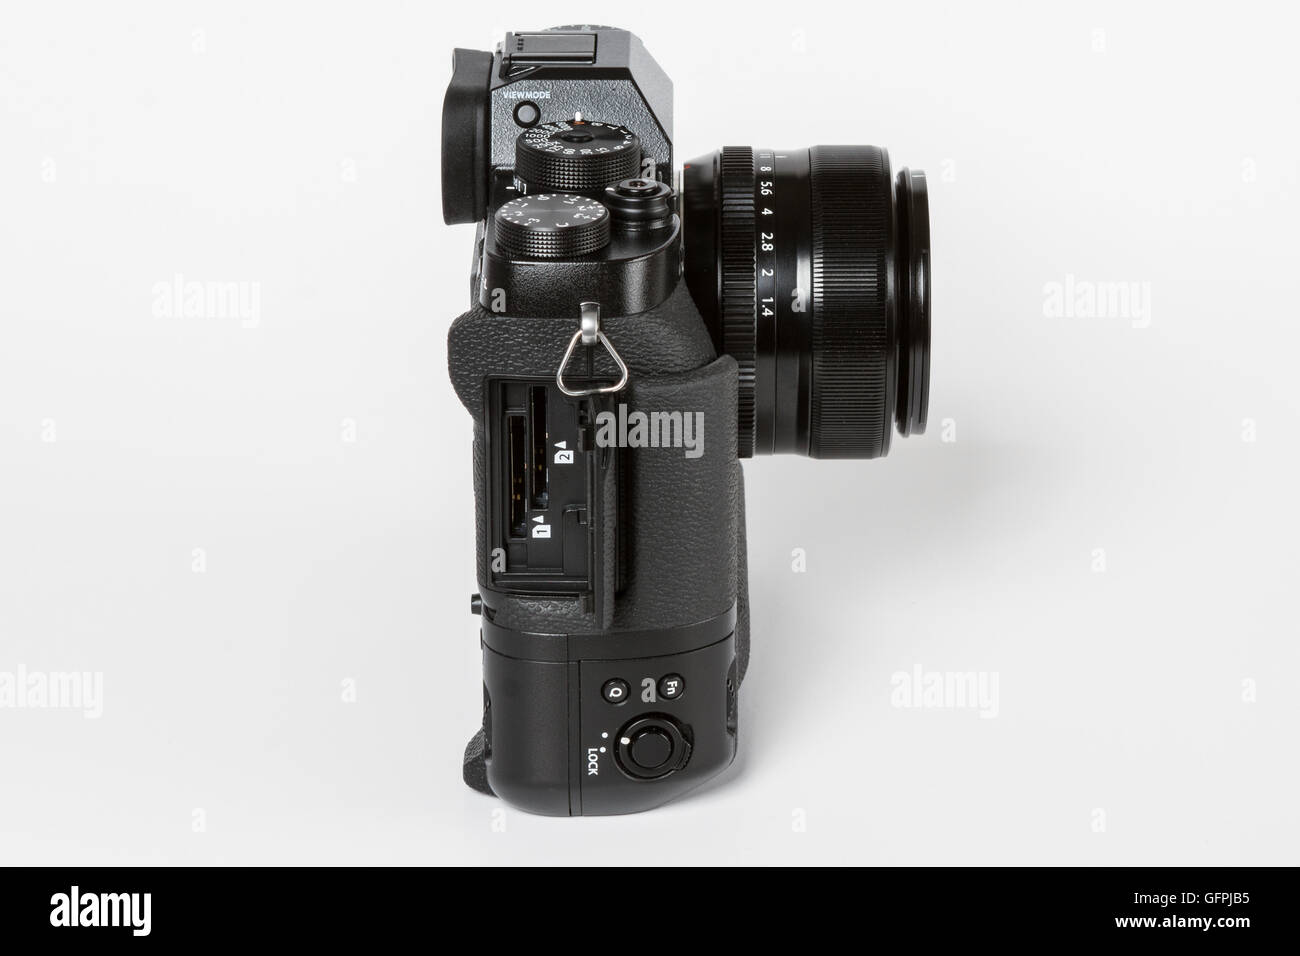 FUJIFILM X-T2, 24 mégapixels, vidéo 4K avec appareil photo mirrorless 35mm 1.4 Objectif avec une batterie additionnelle prise en main et ouvrir des portes Banque D'Images